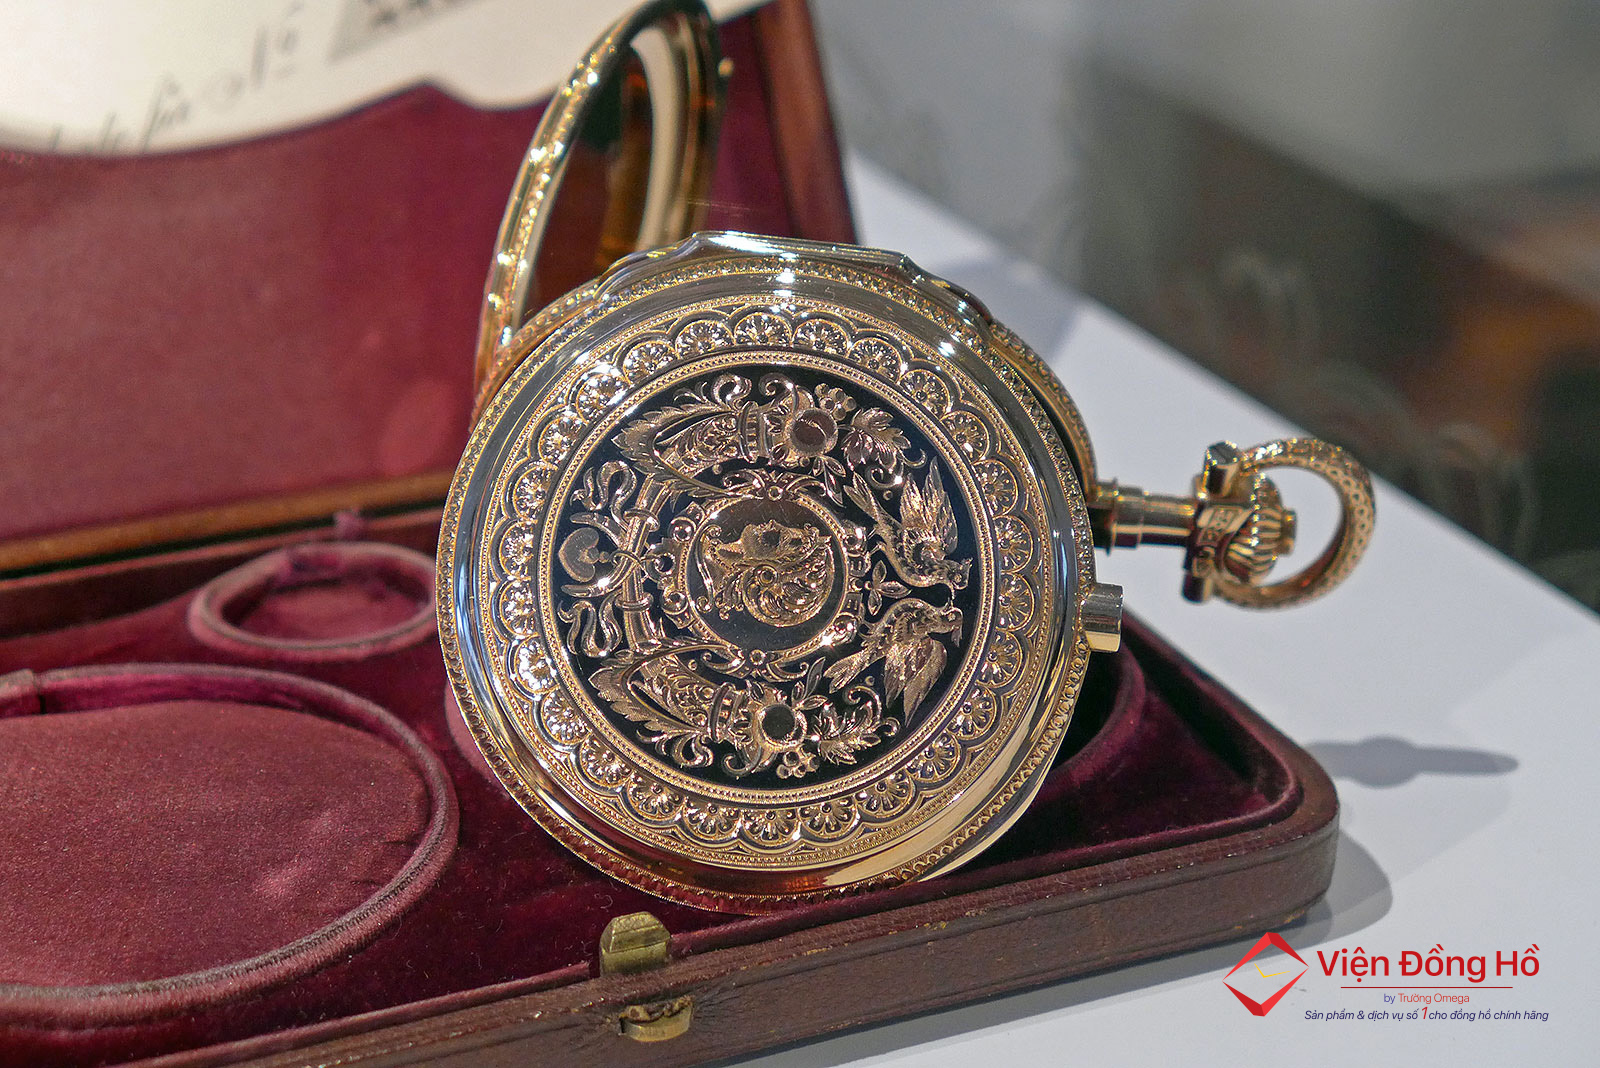 German Watch Museum - Tham quan bao tang dong ho Duc 9